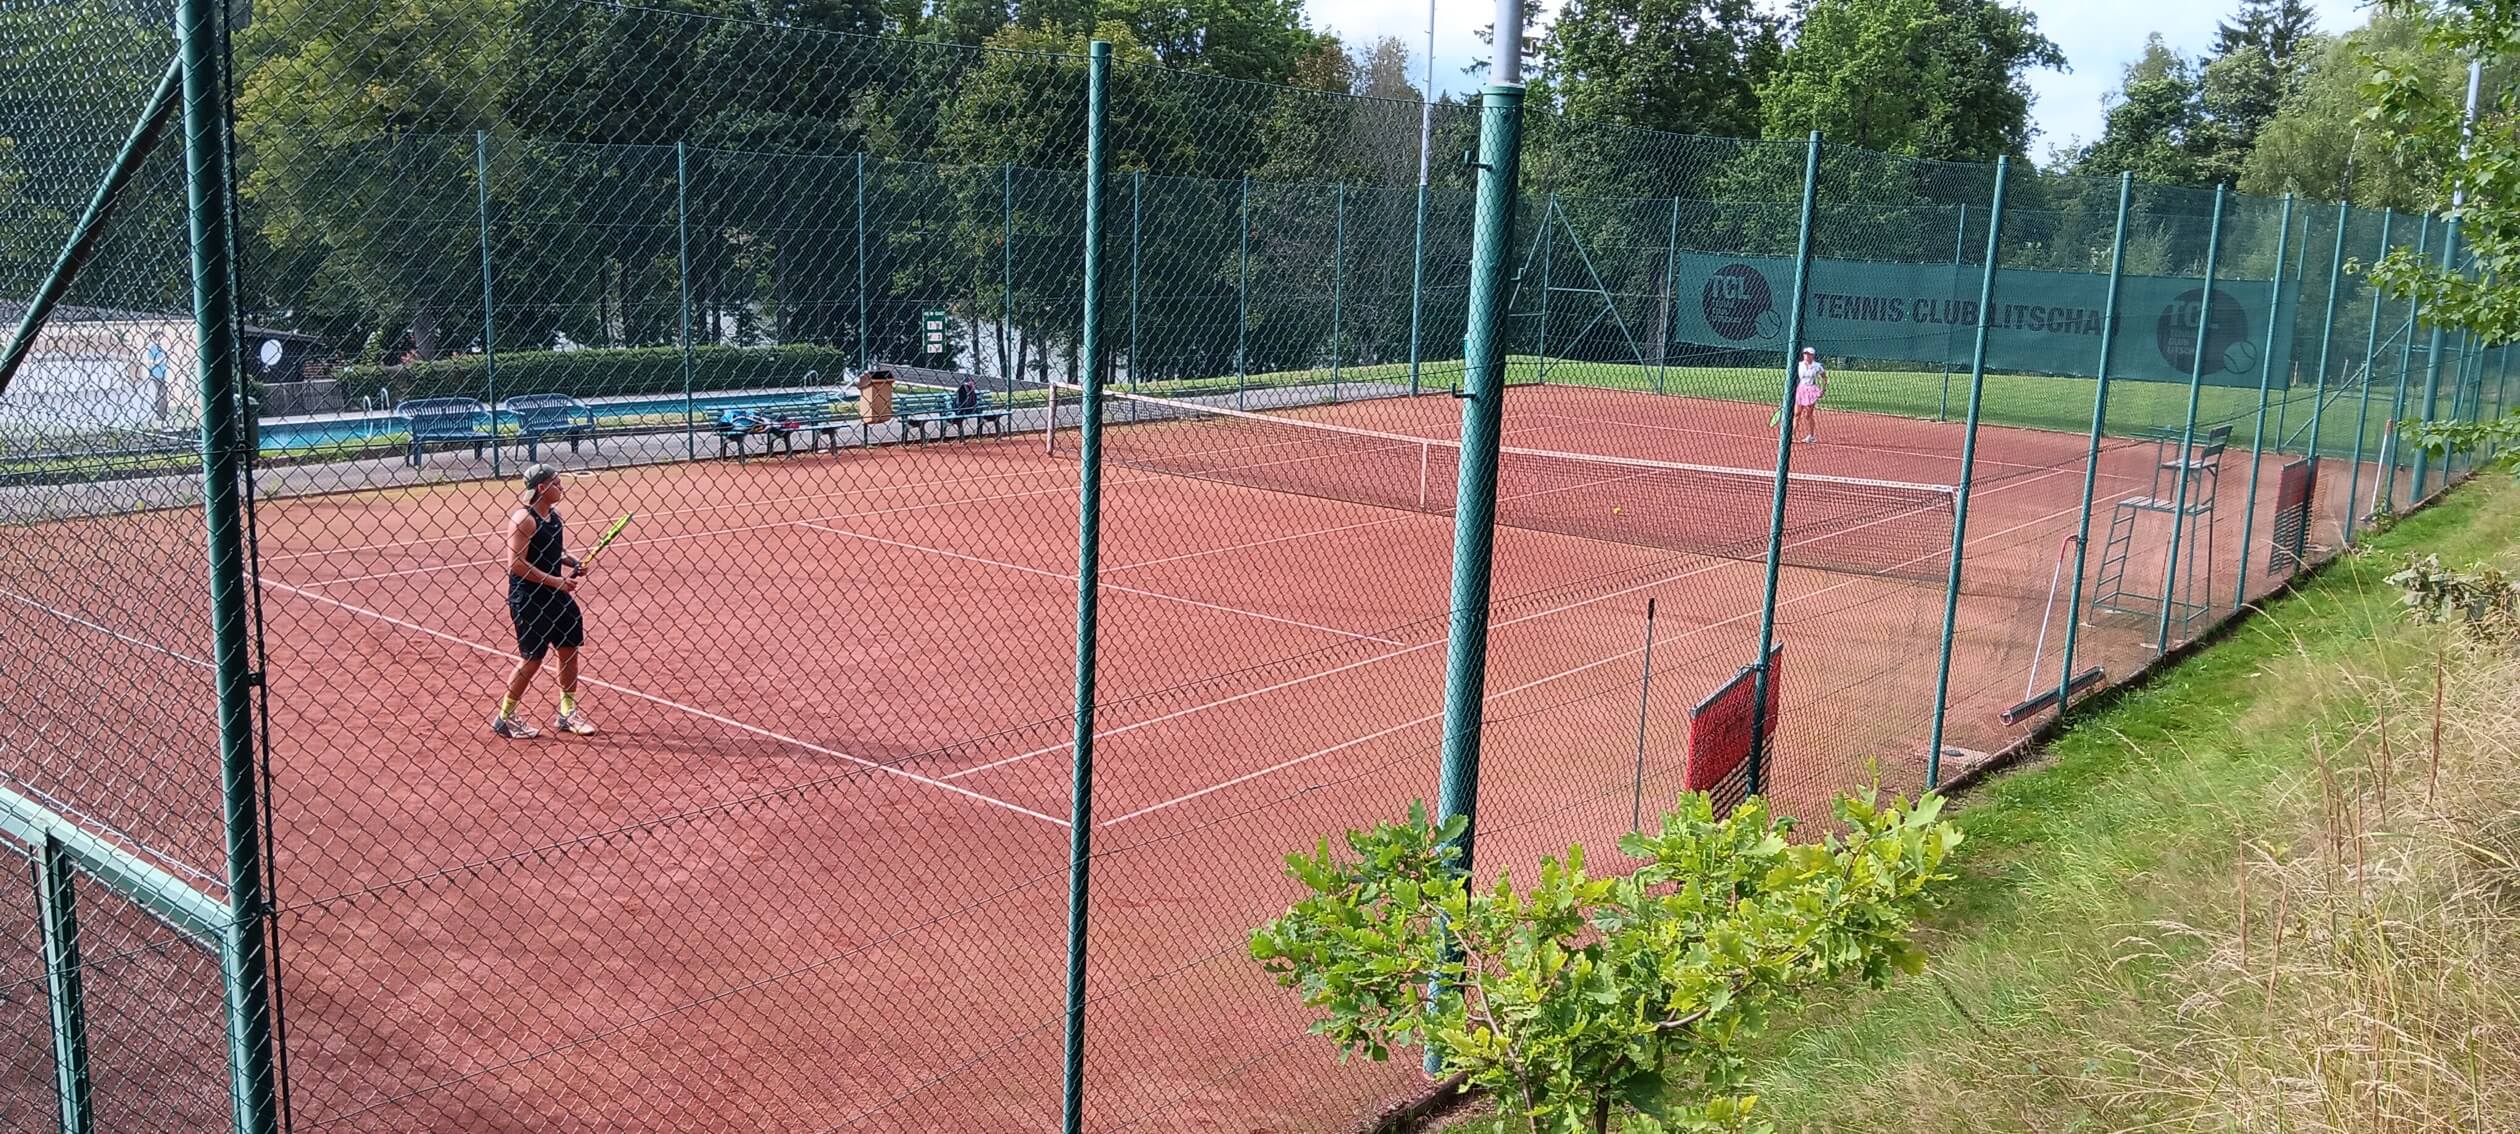 Tennisclub-Litschau-Foto-von-Martin-Schneider